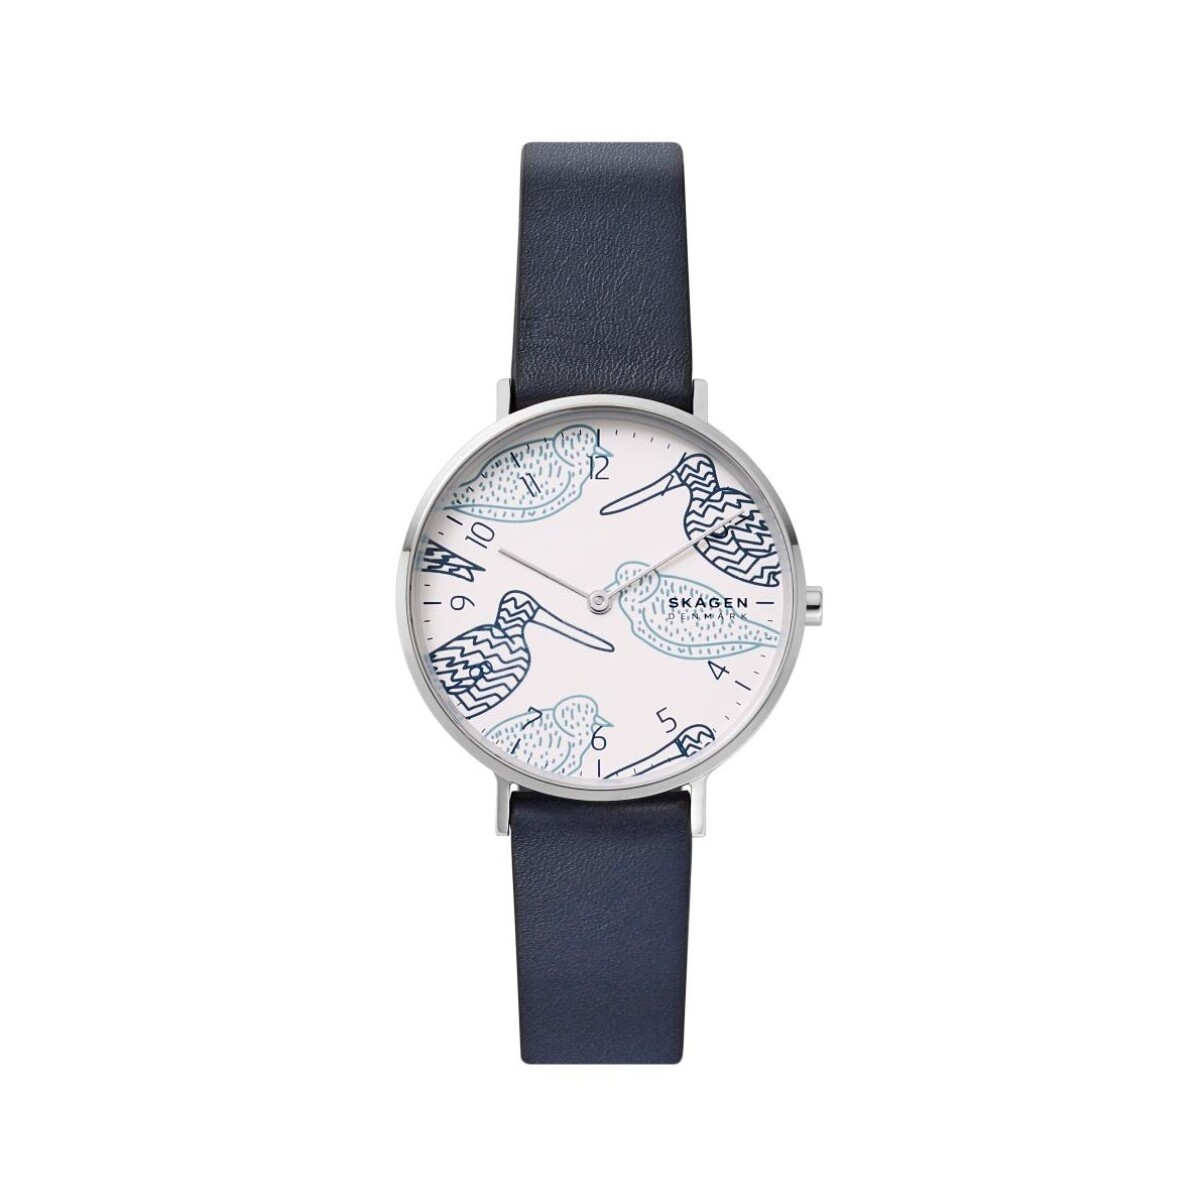 Reloj Skagen Fashion Cuero Azul 